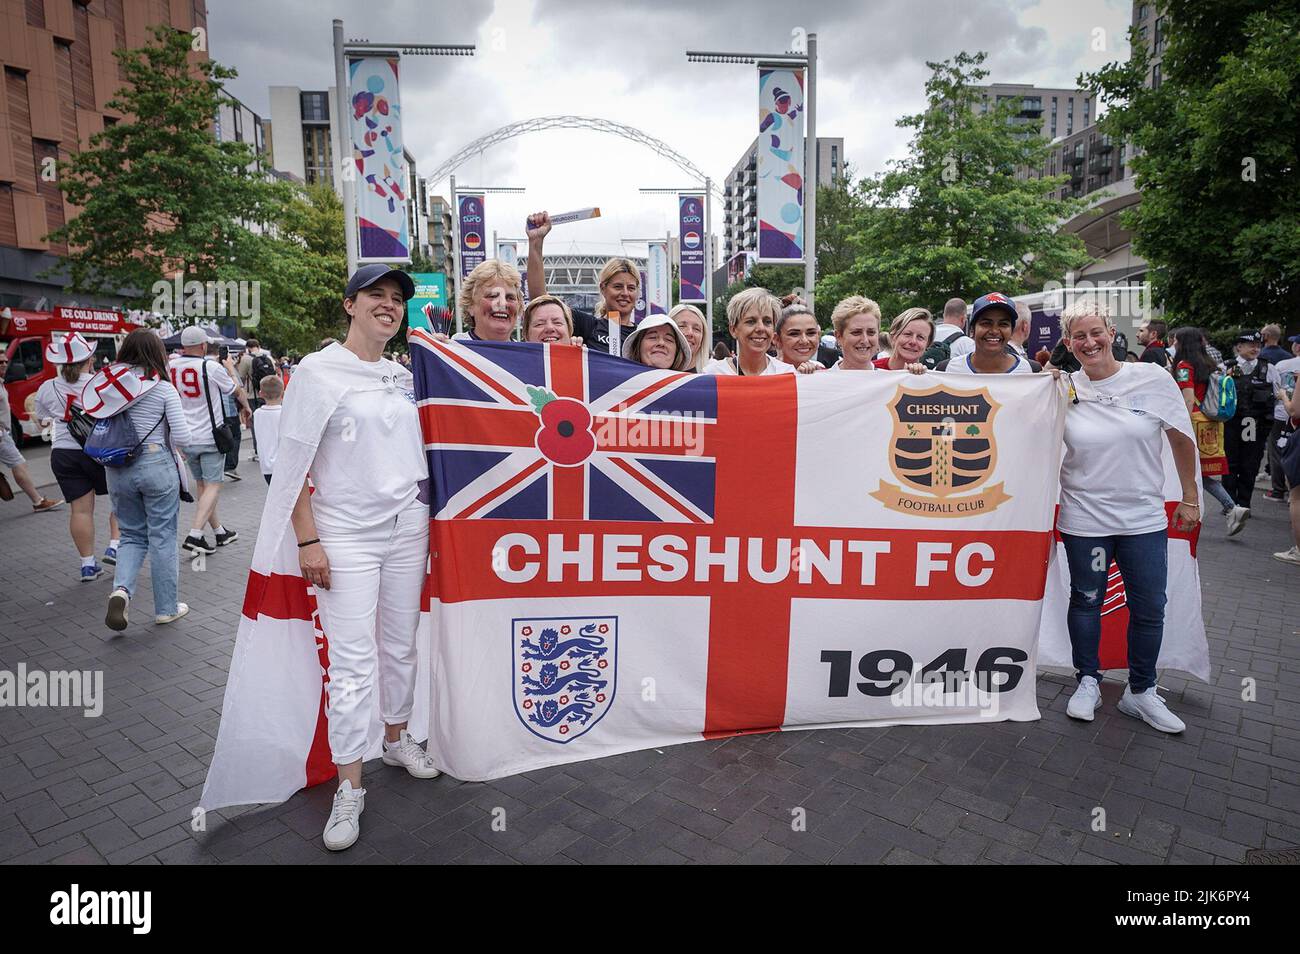 Londres, Royaume-Uni. 31st juillet 2022. Euro 2022: Les fans arrivent au stade Wembley avant la finale du match des femmes de l'UEFA EURO Angleterre contre Allemagne. Credit: Guy Corbishley/Alamy Live News Banque D'Images